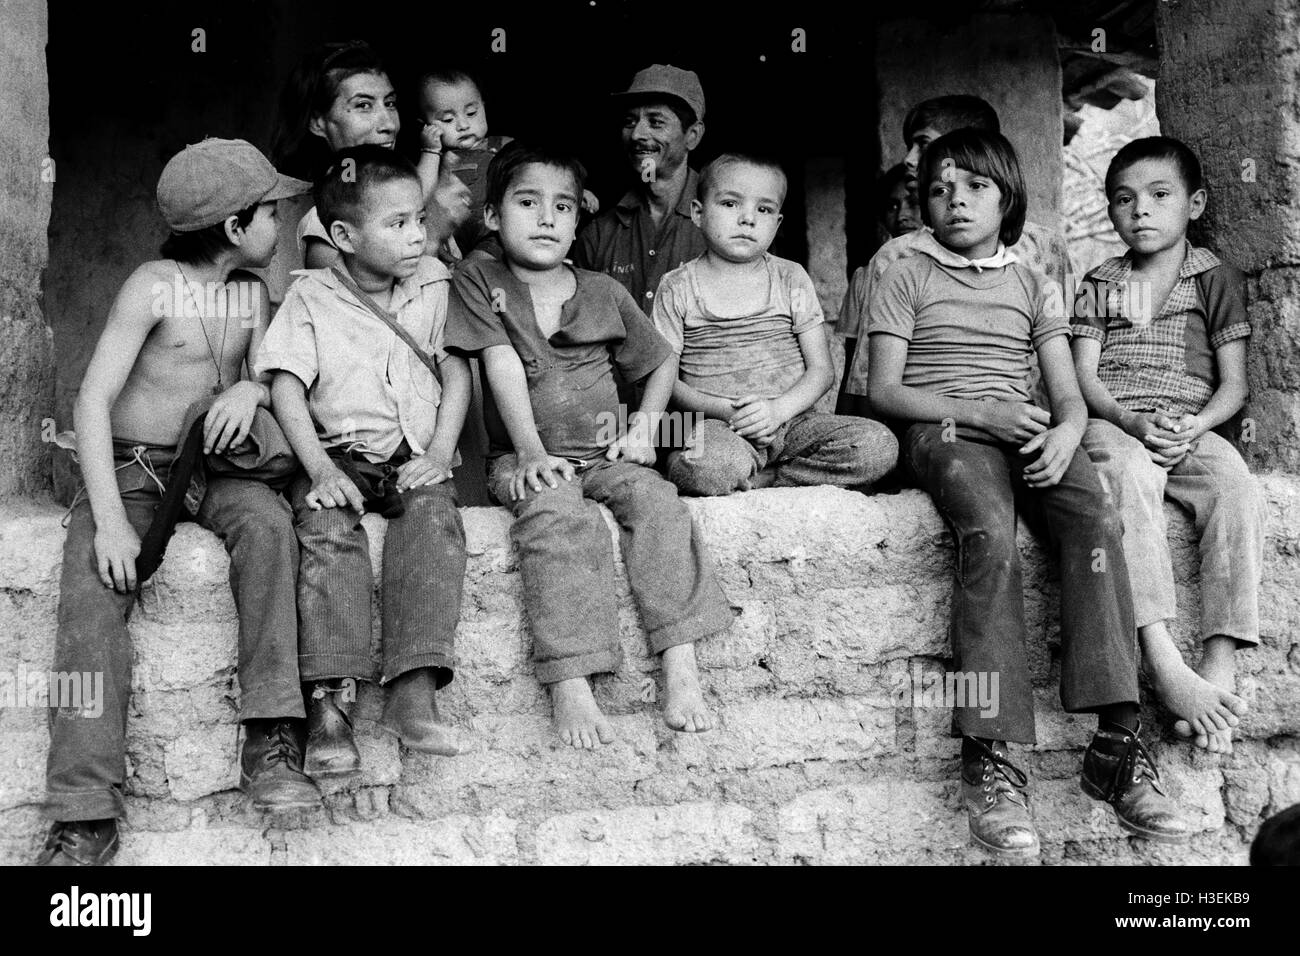 CHALATENANGO, EL SALVADOR, février 1984 : - dans le FPL Les zones de contrôle Les enfants sont assis sur un wll pour écouter un concert de musique locale. Photo de Mike Goldwater Banque D'Images